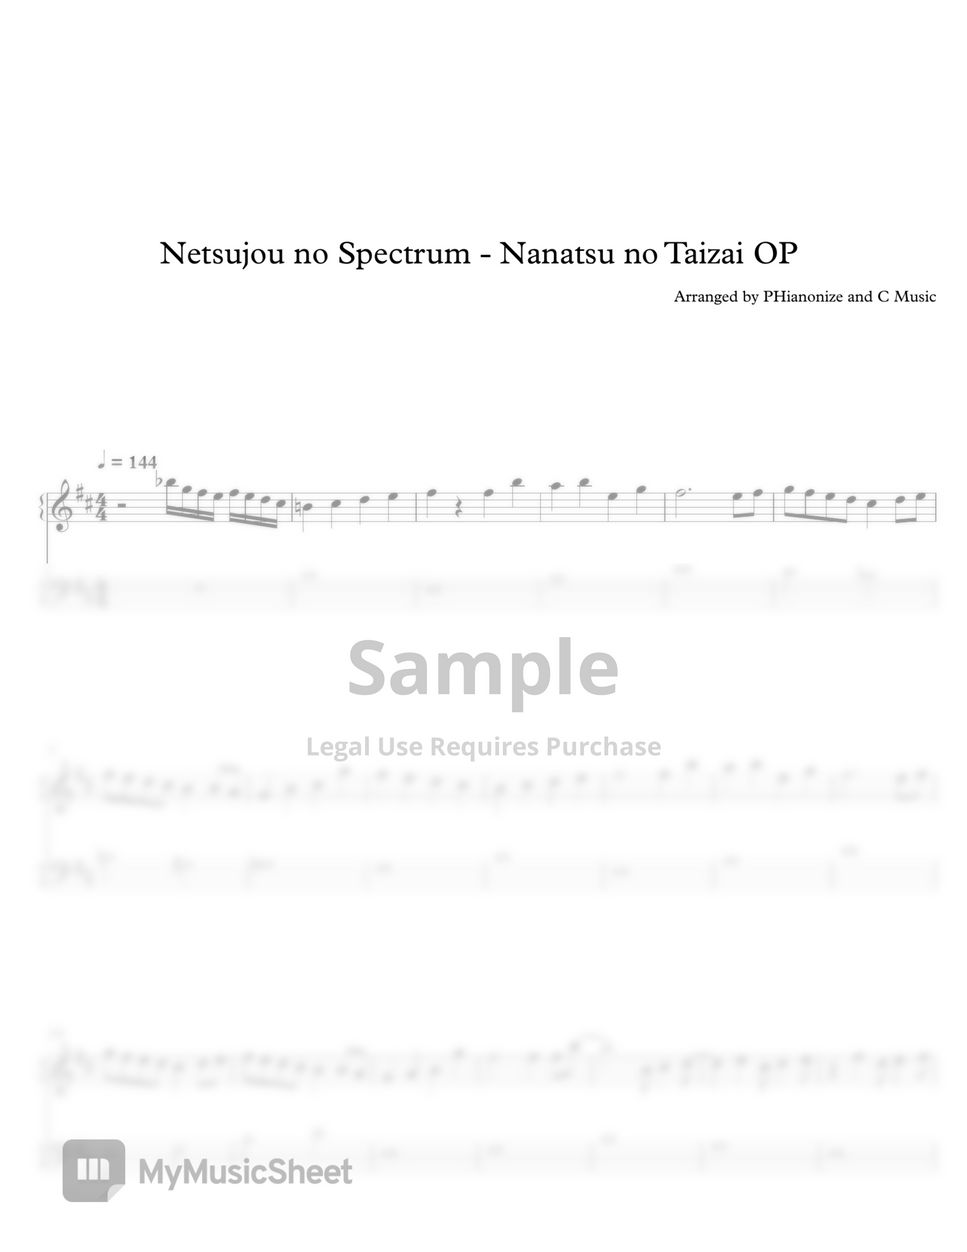 Netsujou no Spectrum - Nanatsu no Taizai by C Music